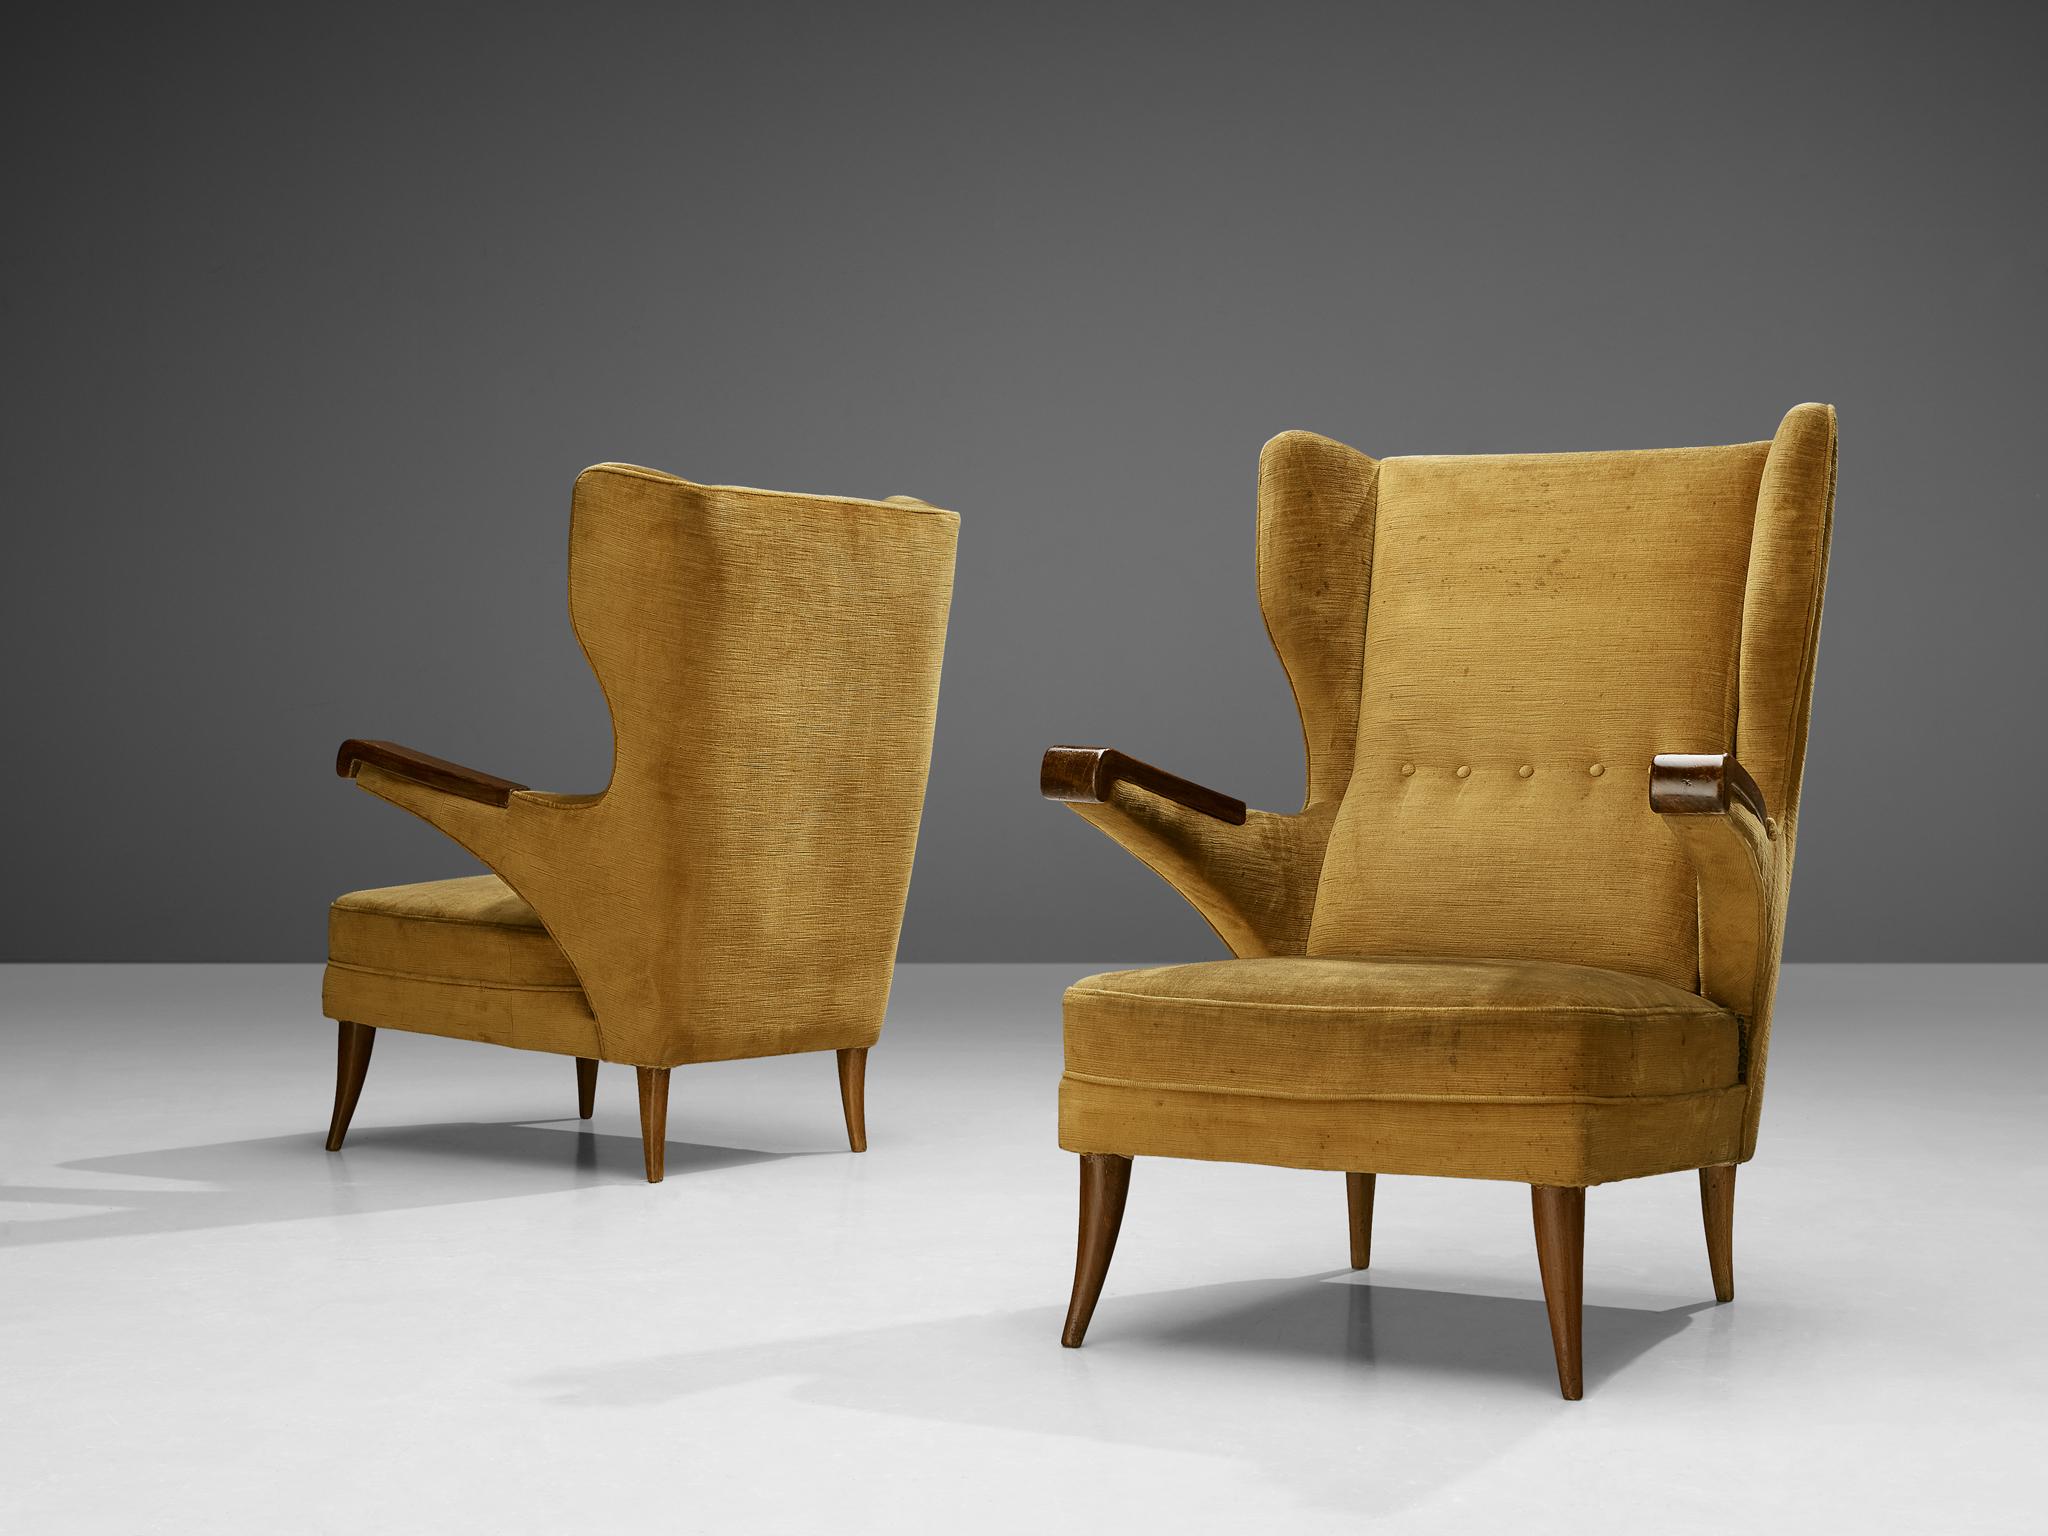 Paar Loungesessel, Samt, gebeizte Buche, Italien, 1970er Jahre 

Die Konstruktion und der Nutzen dieses Sesselpaars sind vom Designer gut durchdacht, was zu dieser raffinierten Form führt. So wurden beispielsweise die Armlehnen von der Sitzfläche